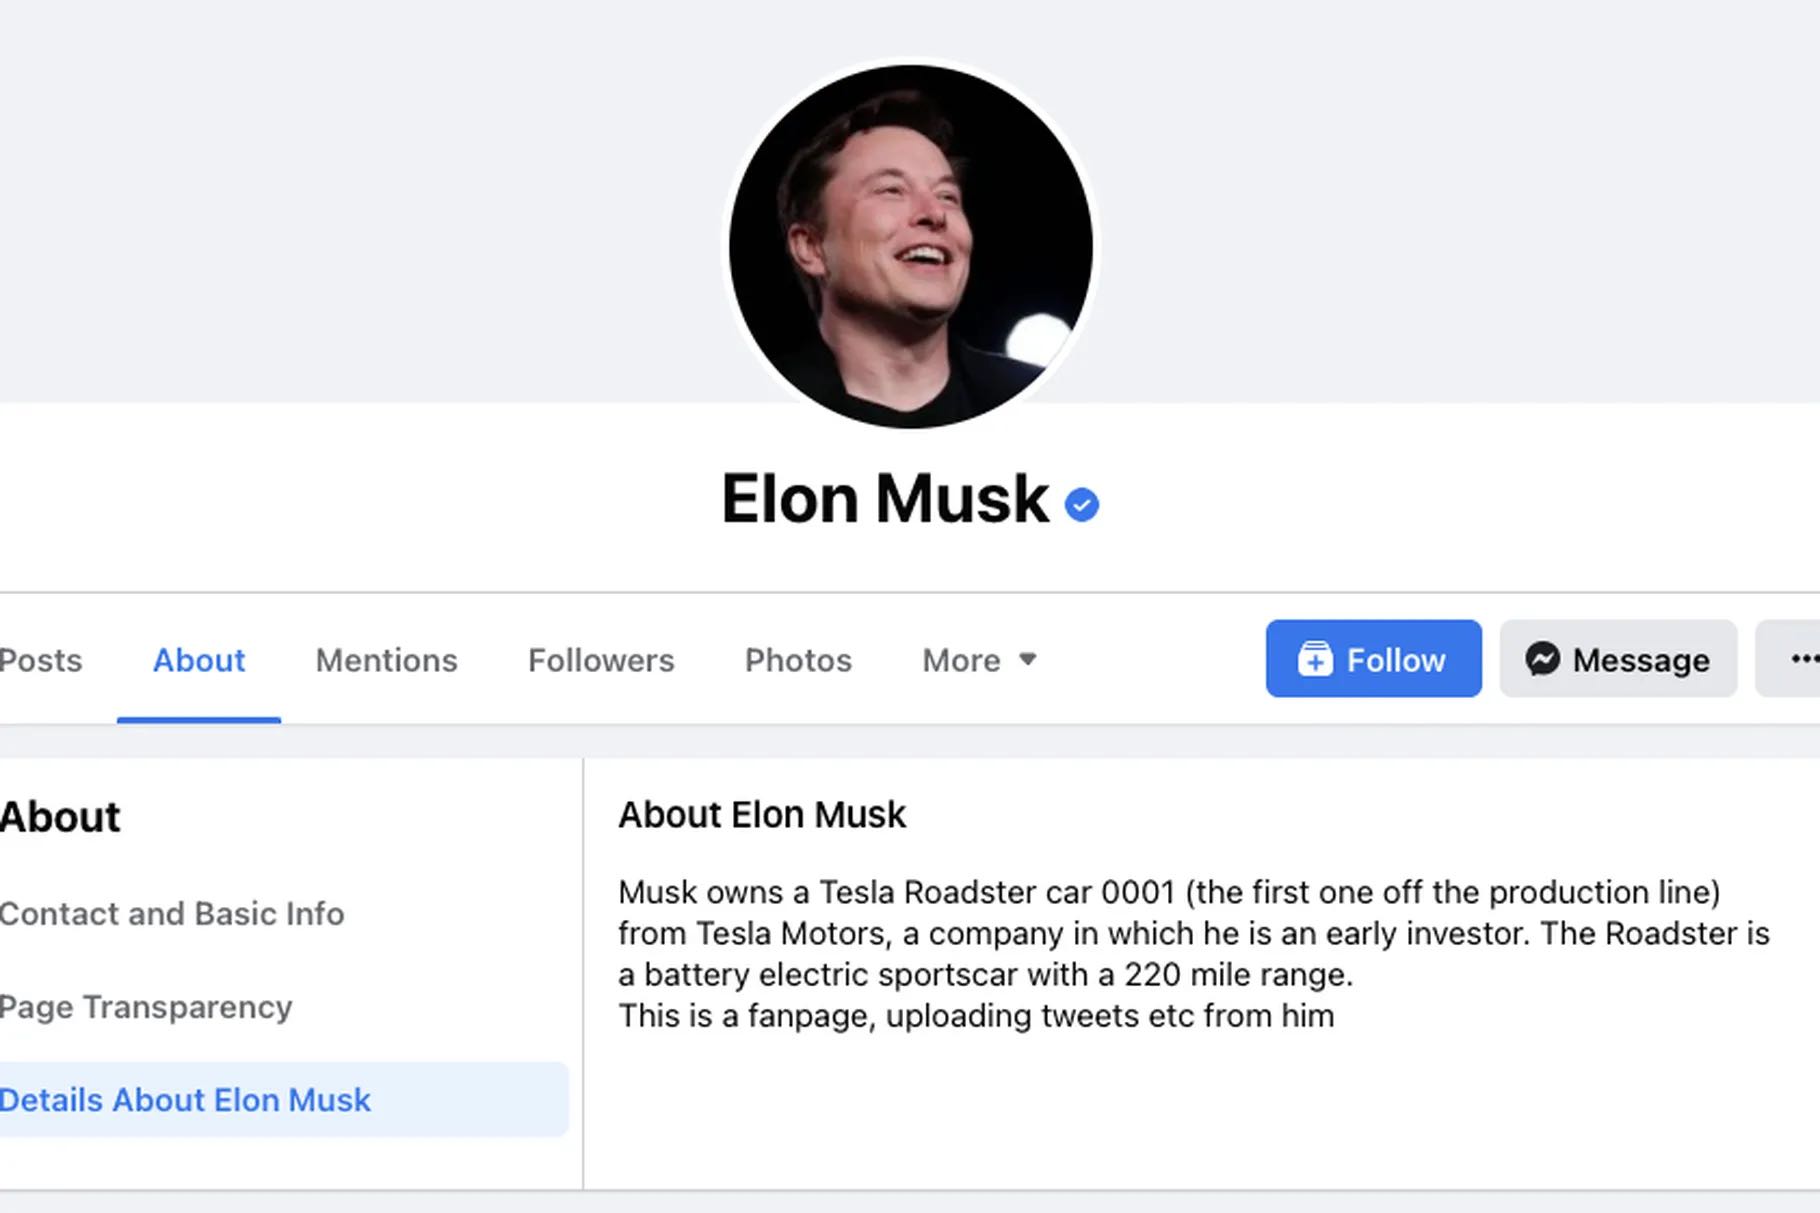 Facebook verifica la página falsa de Ilon Musk que ofrece "duplicar bitcoins"